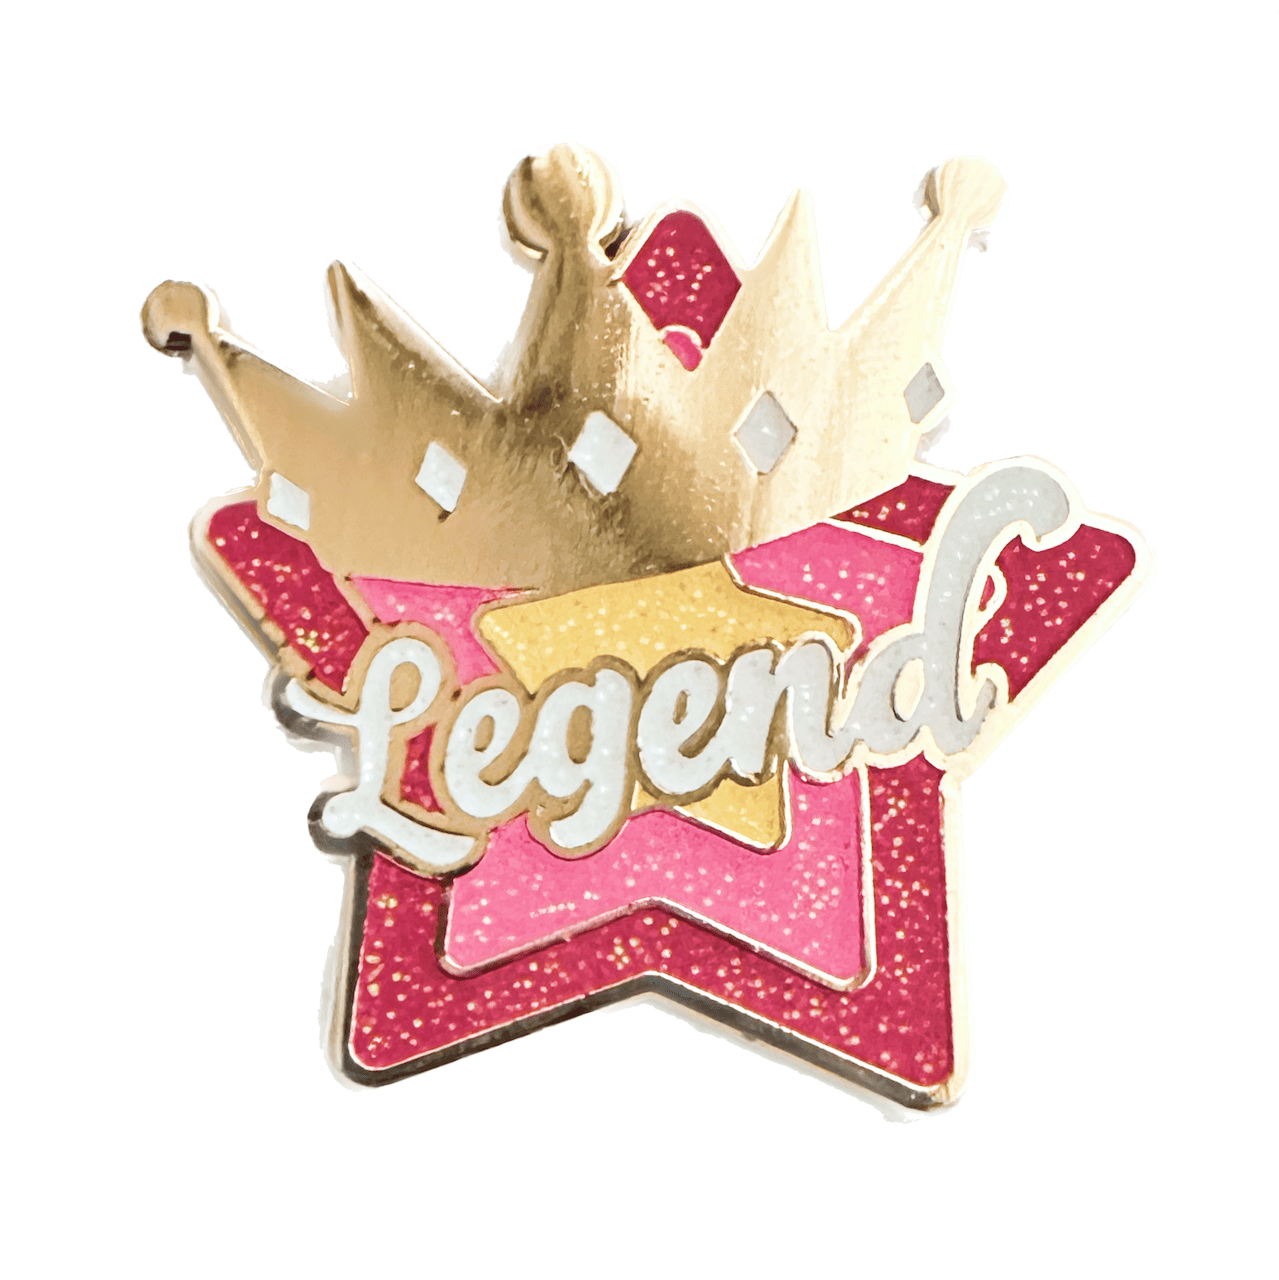 Legendary Legend Pins : Drag race star – pinbuds